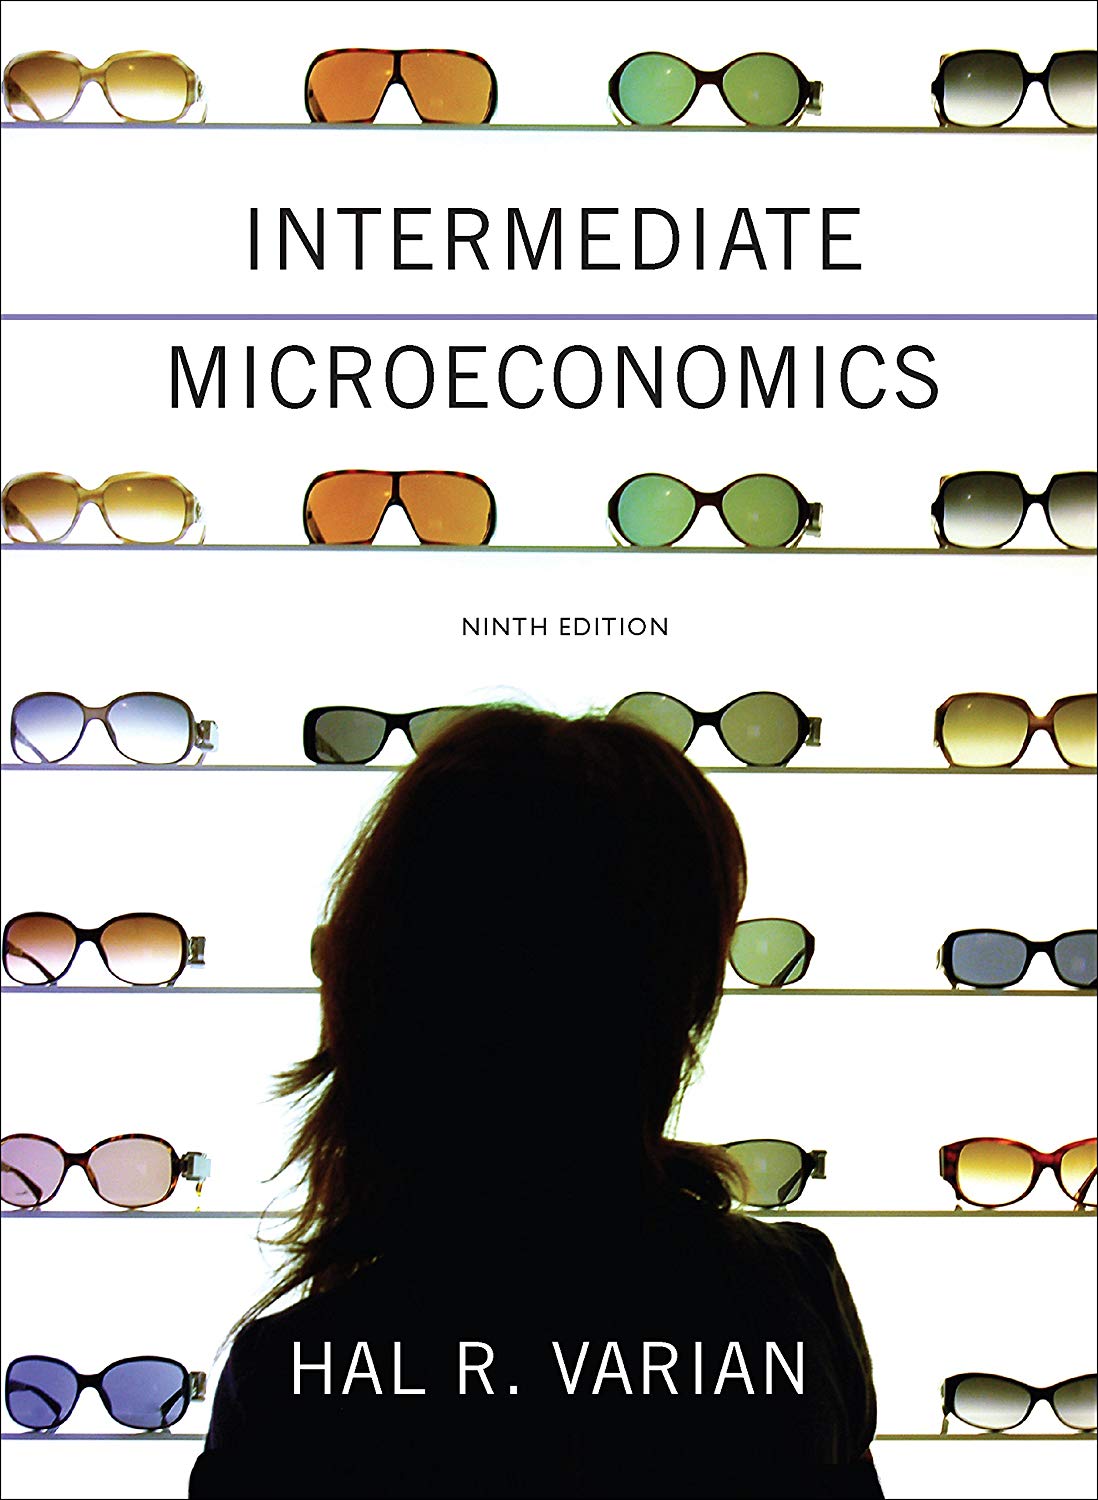 Intermediate Microeconomics 9 Edición Hal R. Varian PDF